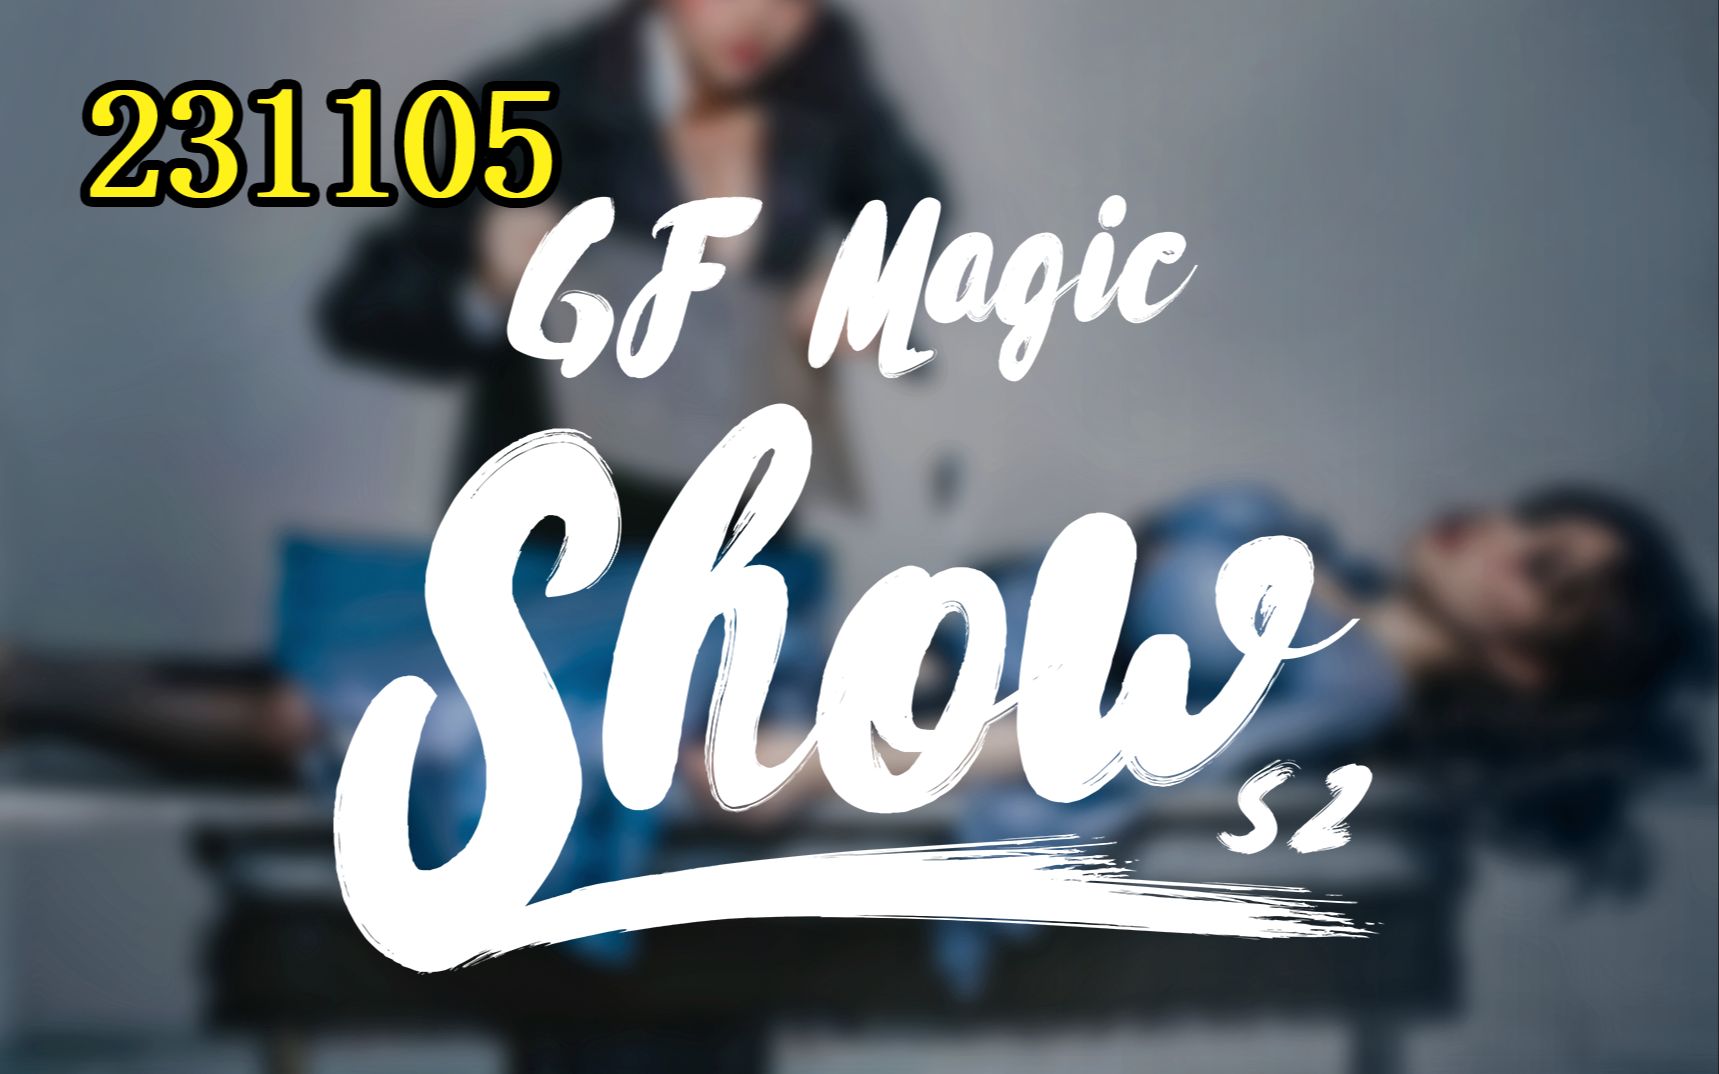 GF Magic Season 2 - Episode 2